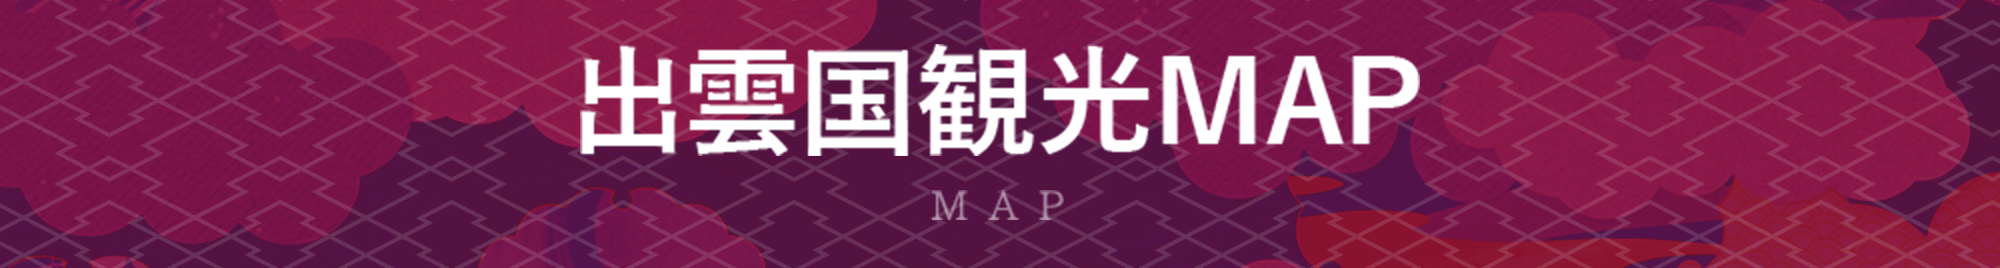 出雲国観光MAP